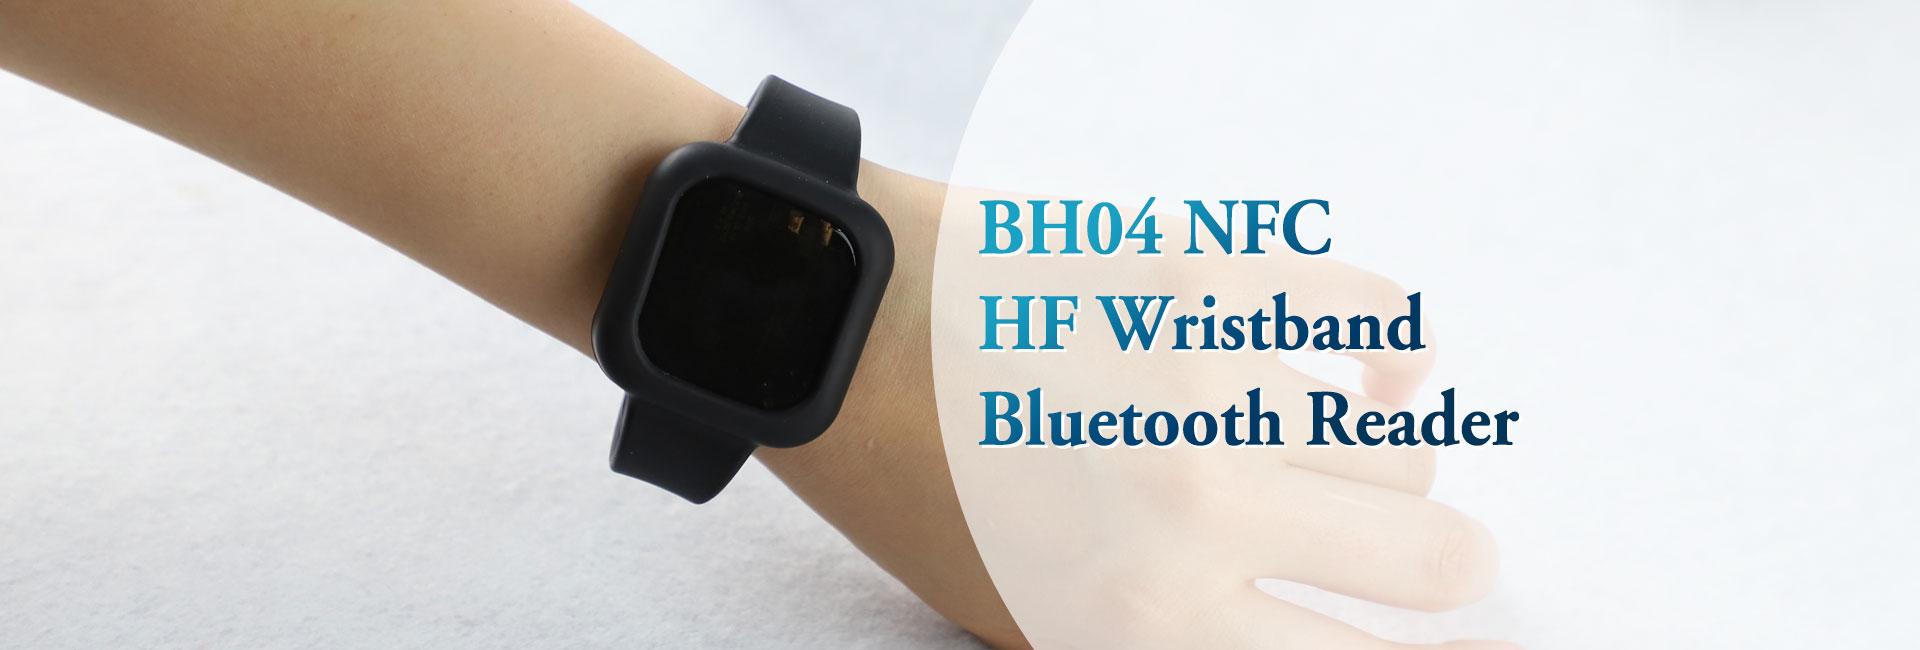 BH04 NFC高频腕带矢车菊ooth Reader